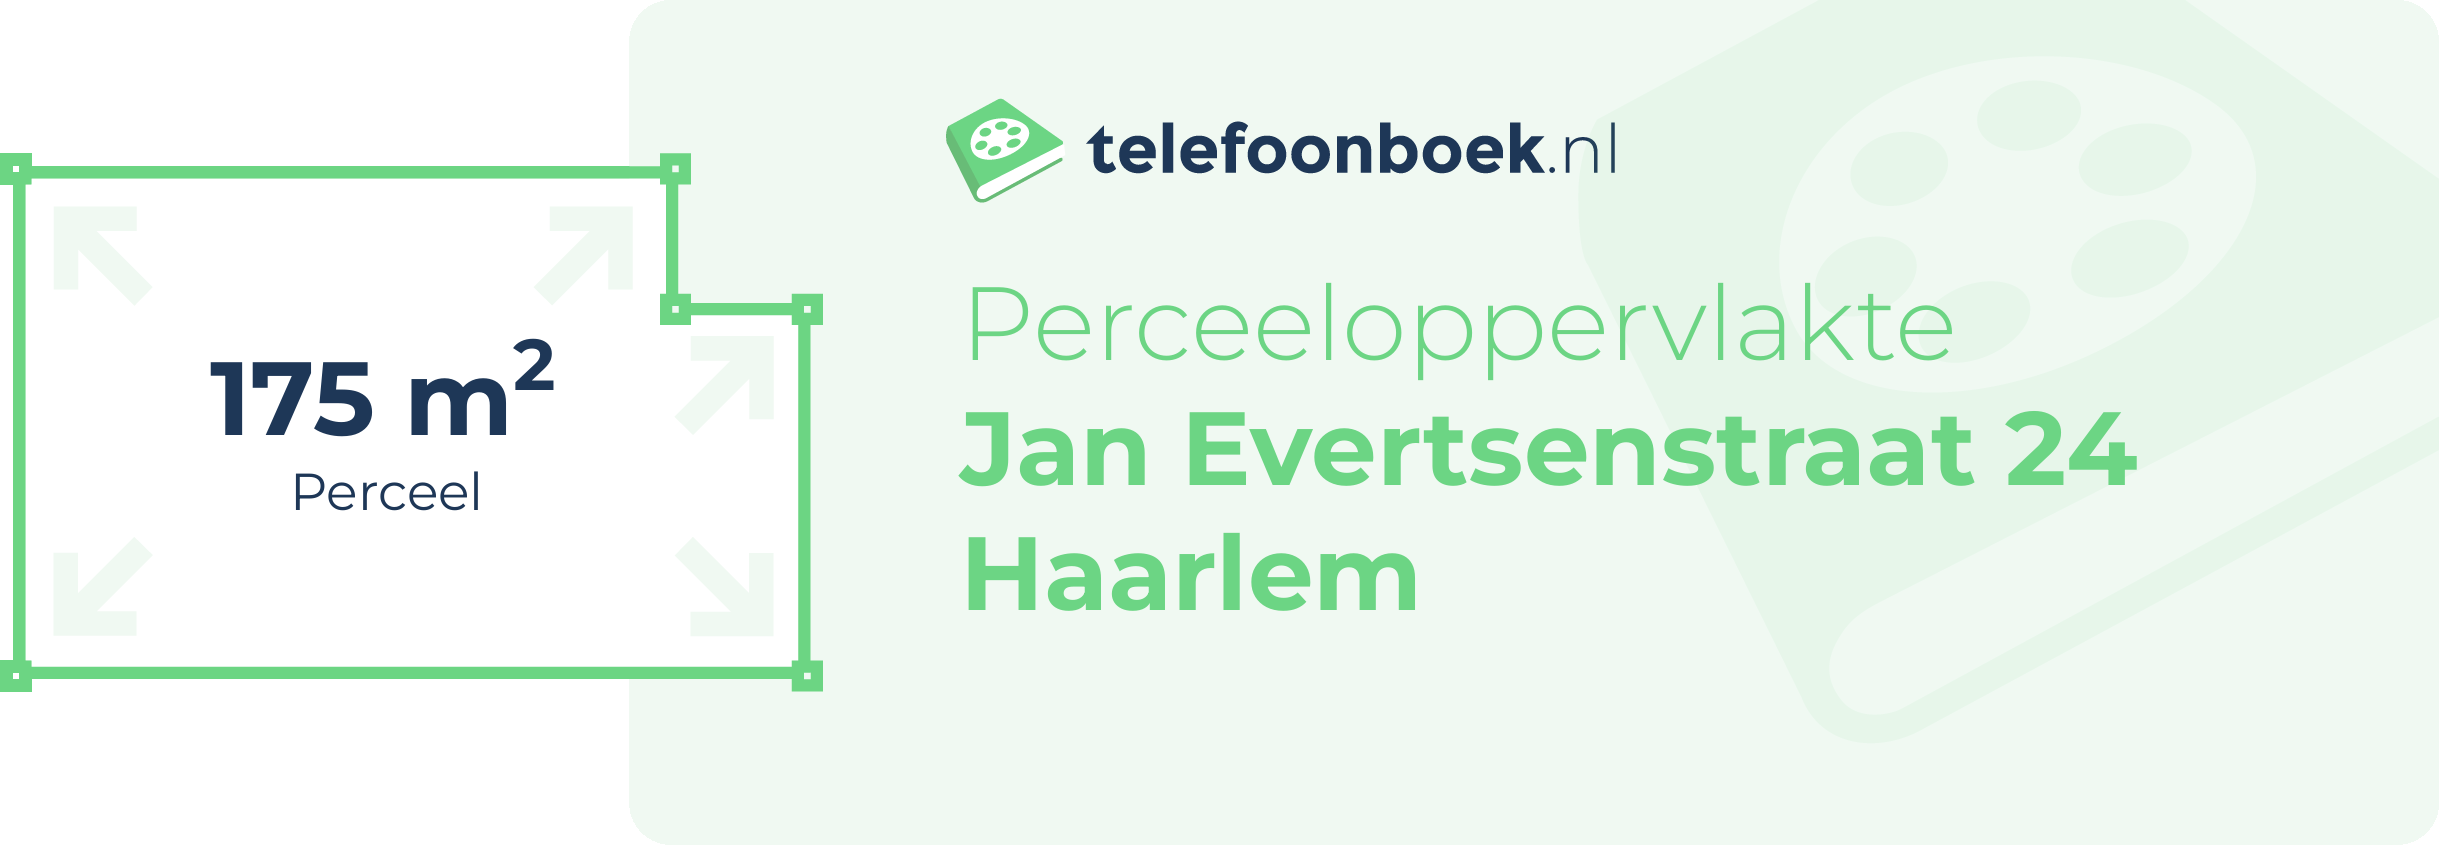 Perceeloppervlakte Jan Evertsenstraat 24 Haarlem